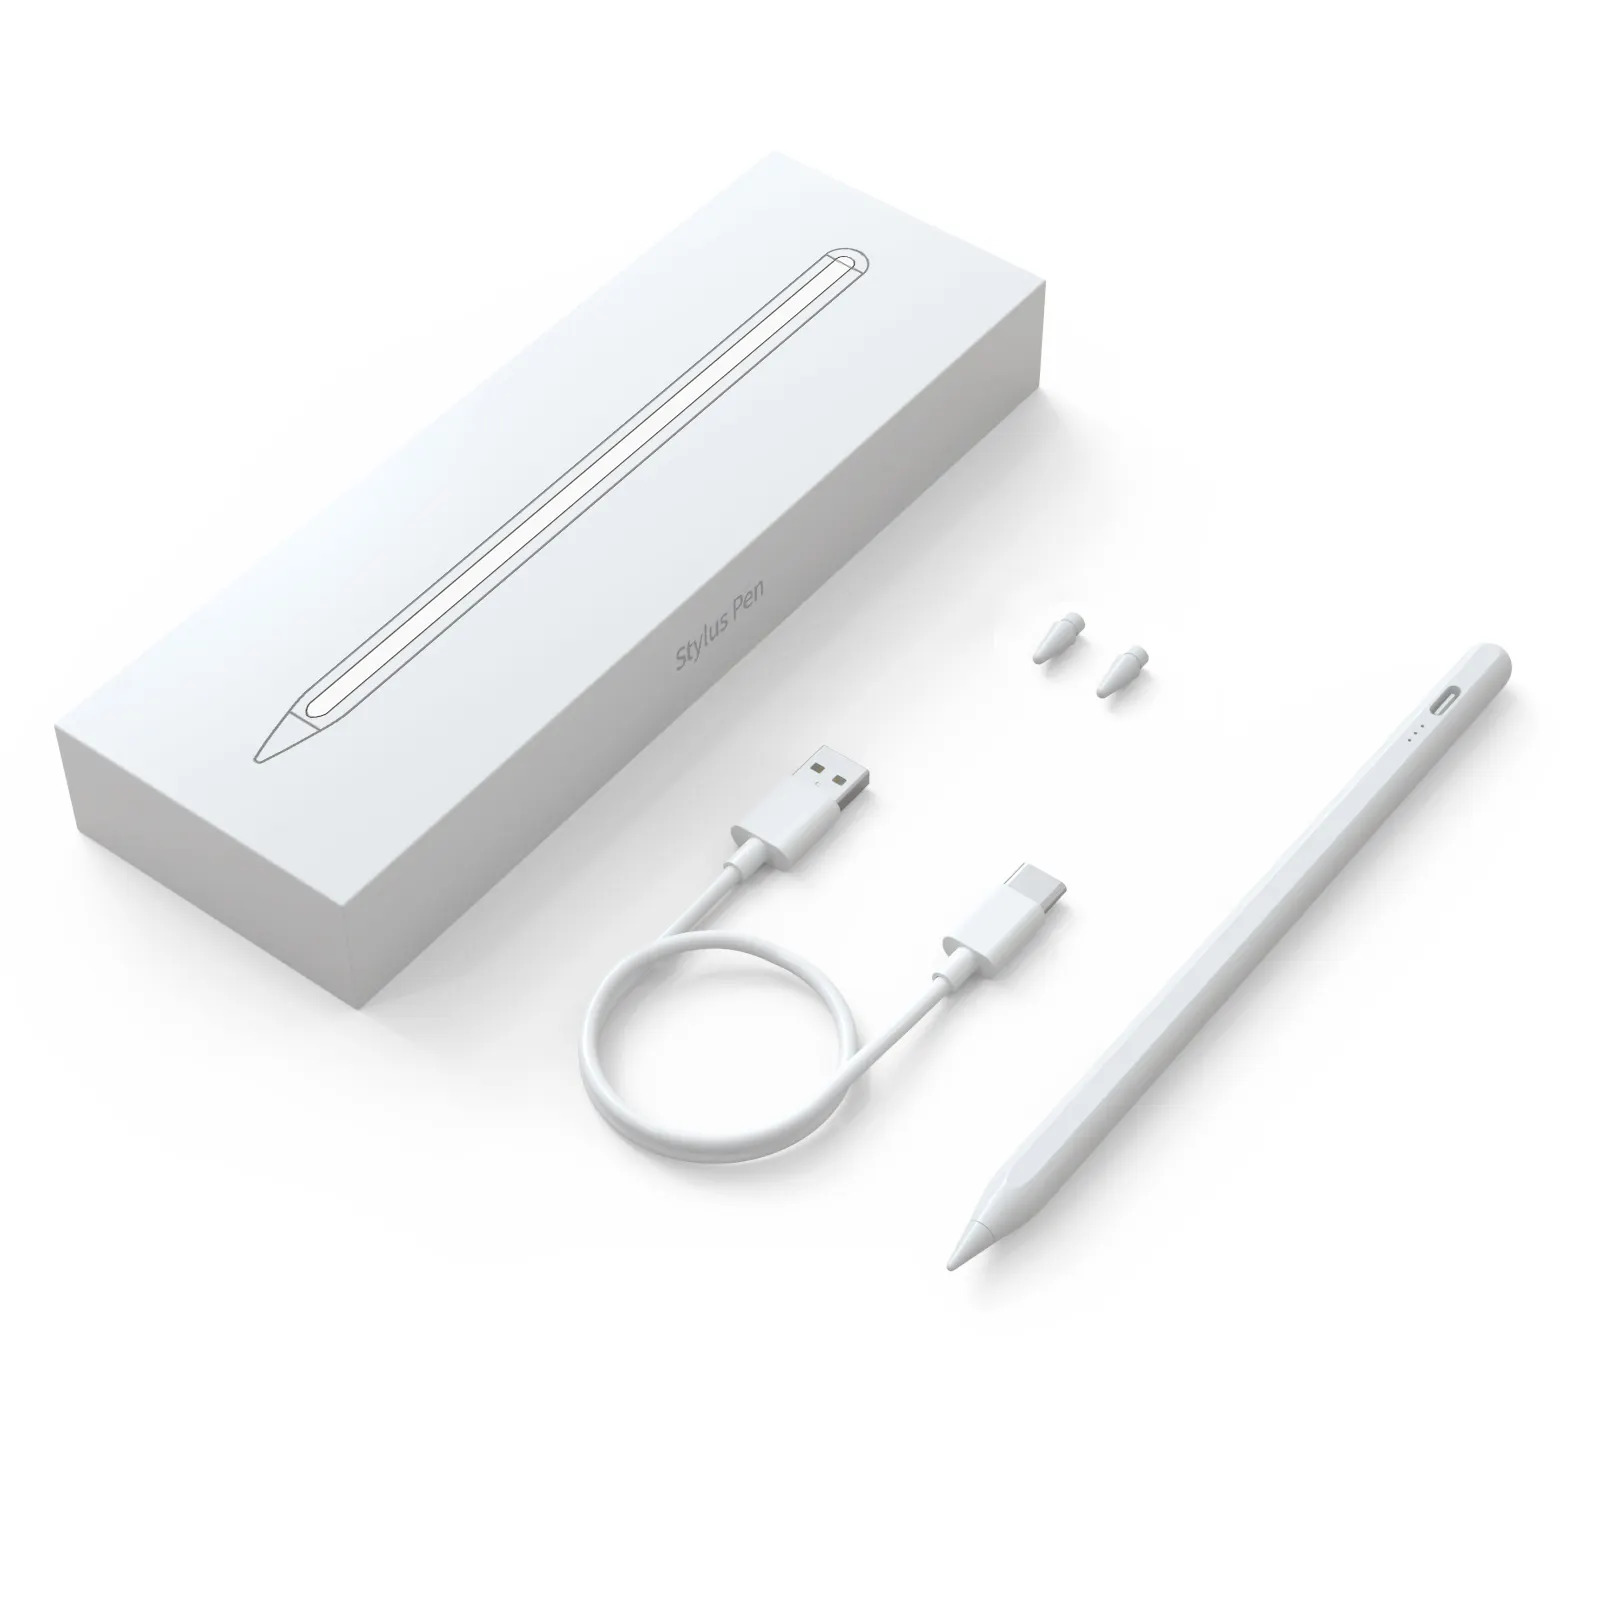 静電容量式スタイラスペンタッチスクリーンPalmRejection Touch Stylus Pen for Apple Pencil For iPad tablet